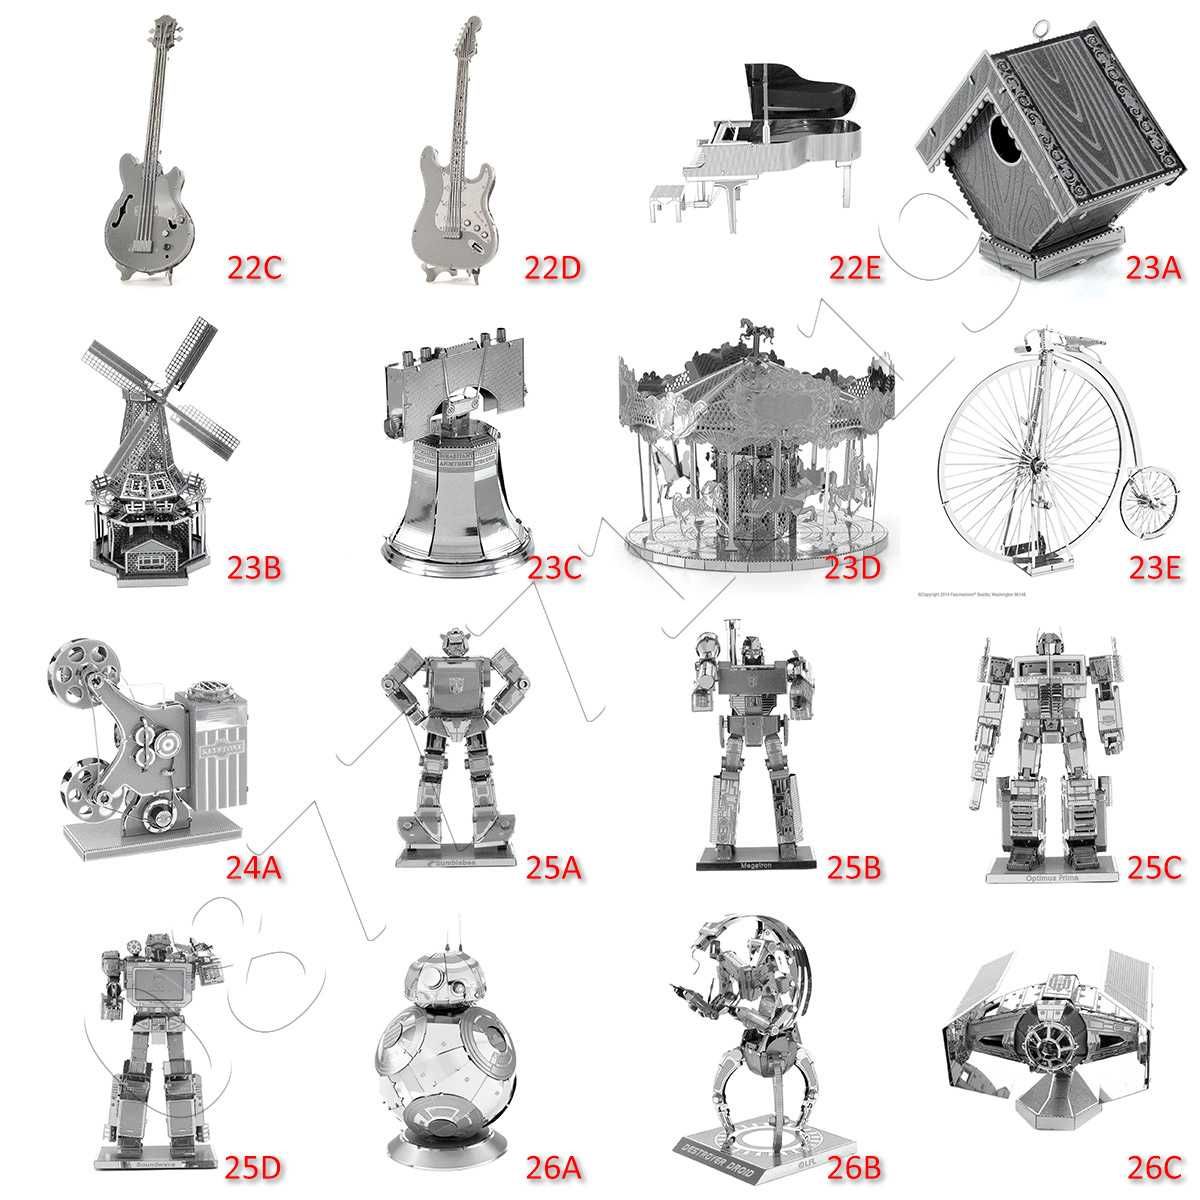 3D метален пъзел - над 170 различни модела метални пъзели